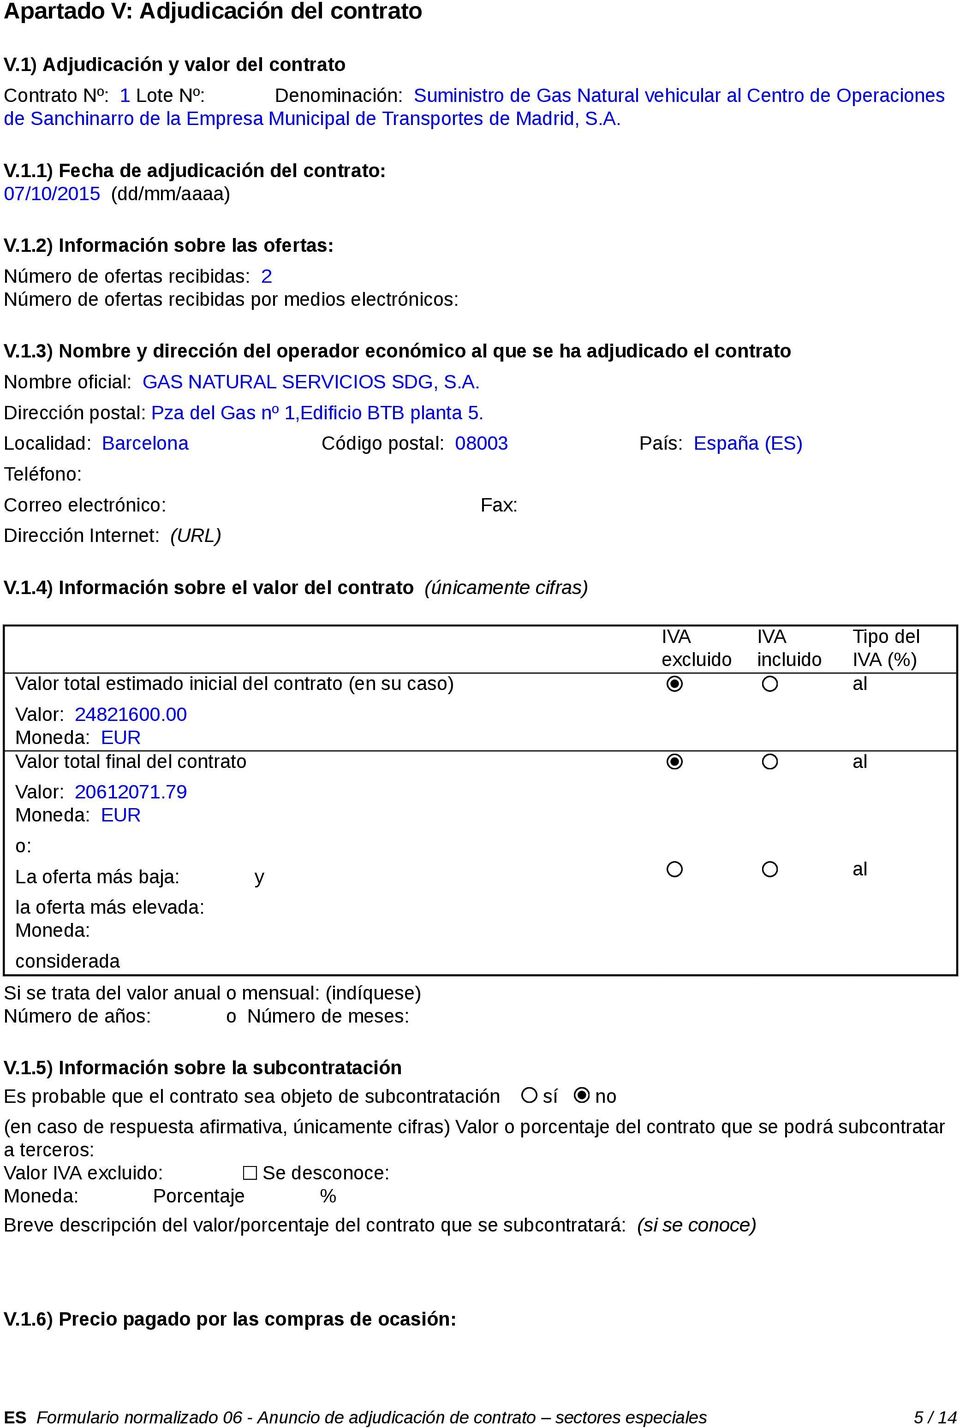 Madrid, S.A. V.1.1) Fecha de adjudicación del contrato: 07/10/2015 (dd/mm/aaaa) V.1.2) Información sobre las ofertas: Número de ofertas recibidas: 2 Número de ofertas recibidas por medios electrónicos: V.